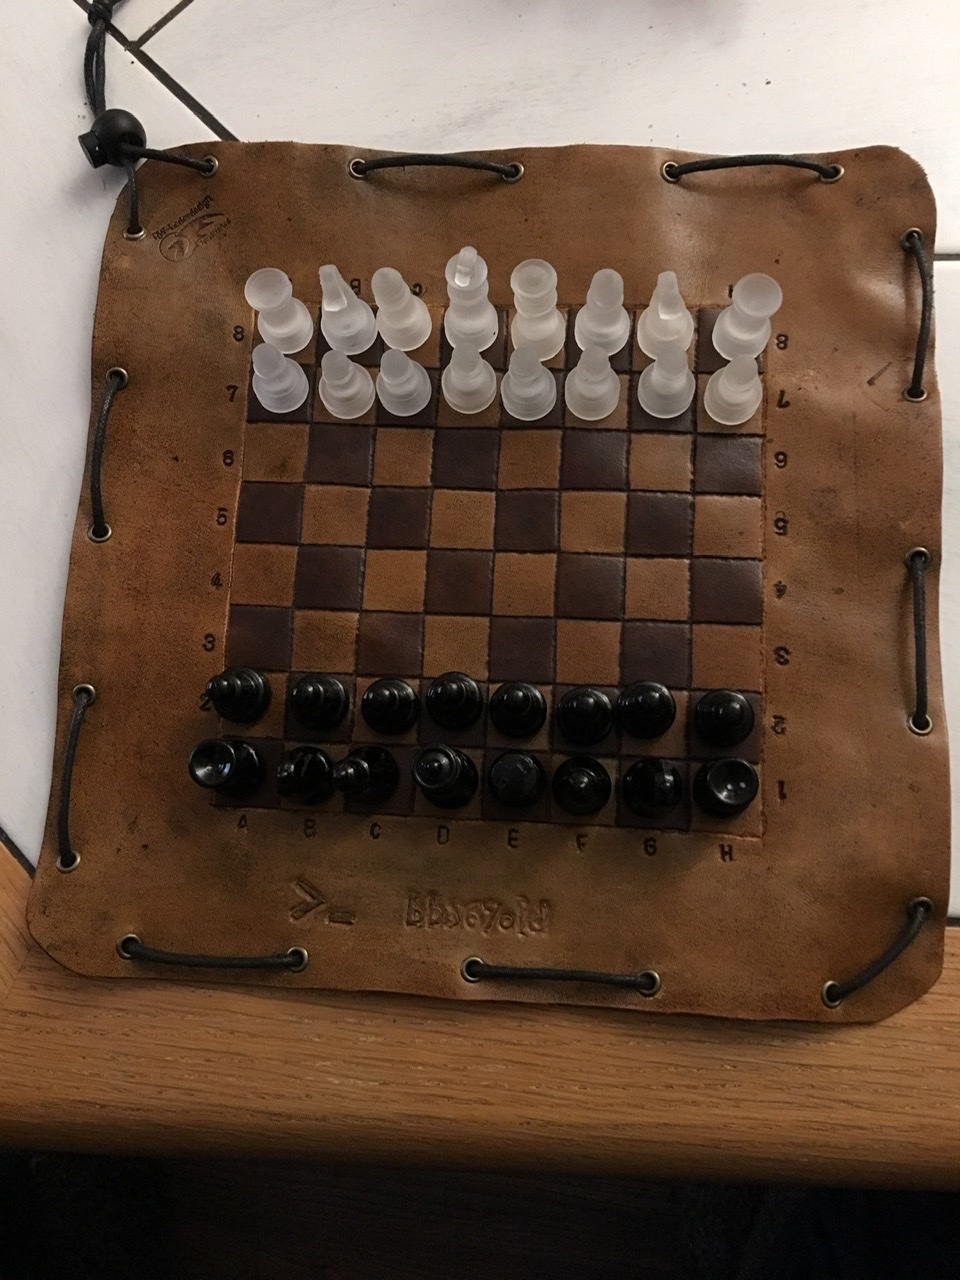 Reise Schachbrett aus Leder